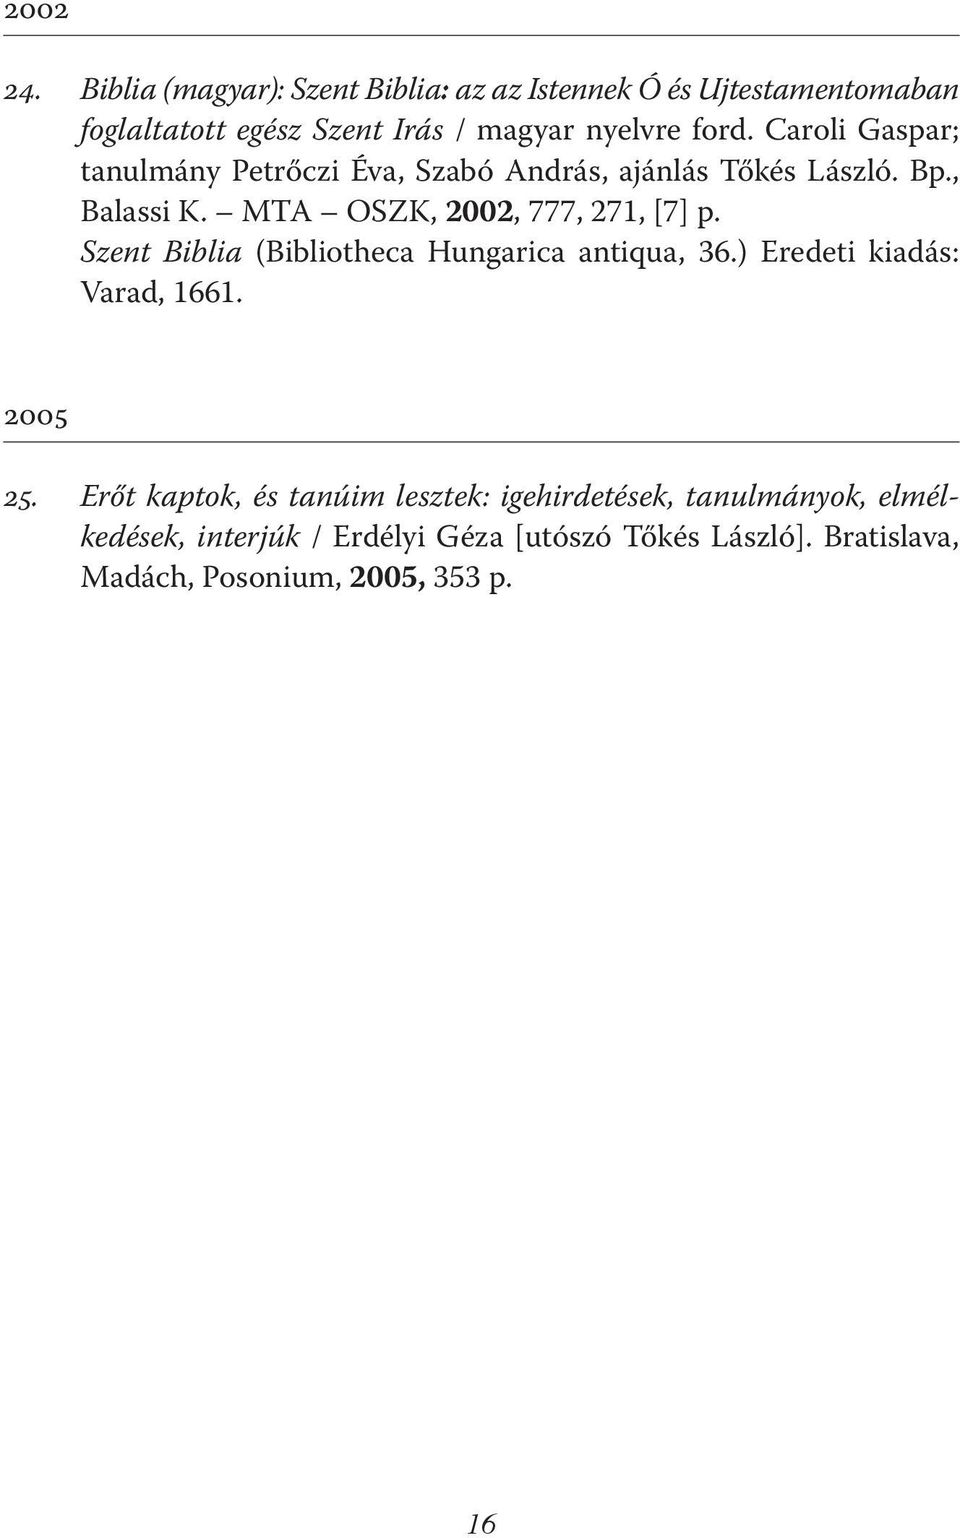 Caroli Gaspar; tanulmány Petrőczi Éva, Szabó András, ajánlás Tőkés László. Bp., Balassi K. MTA OSZK, 2002, 777, 271, [7] p.